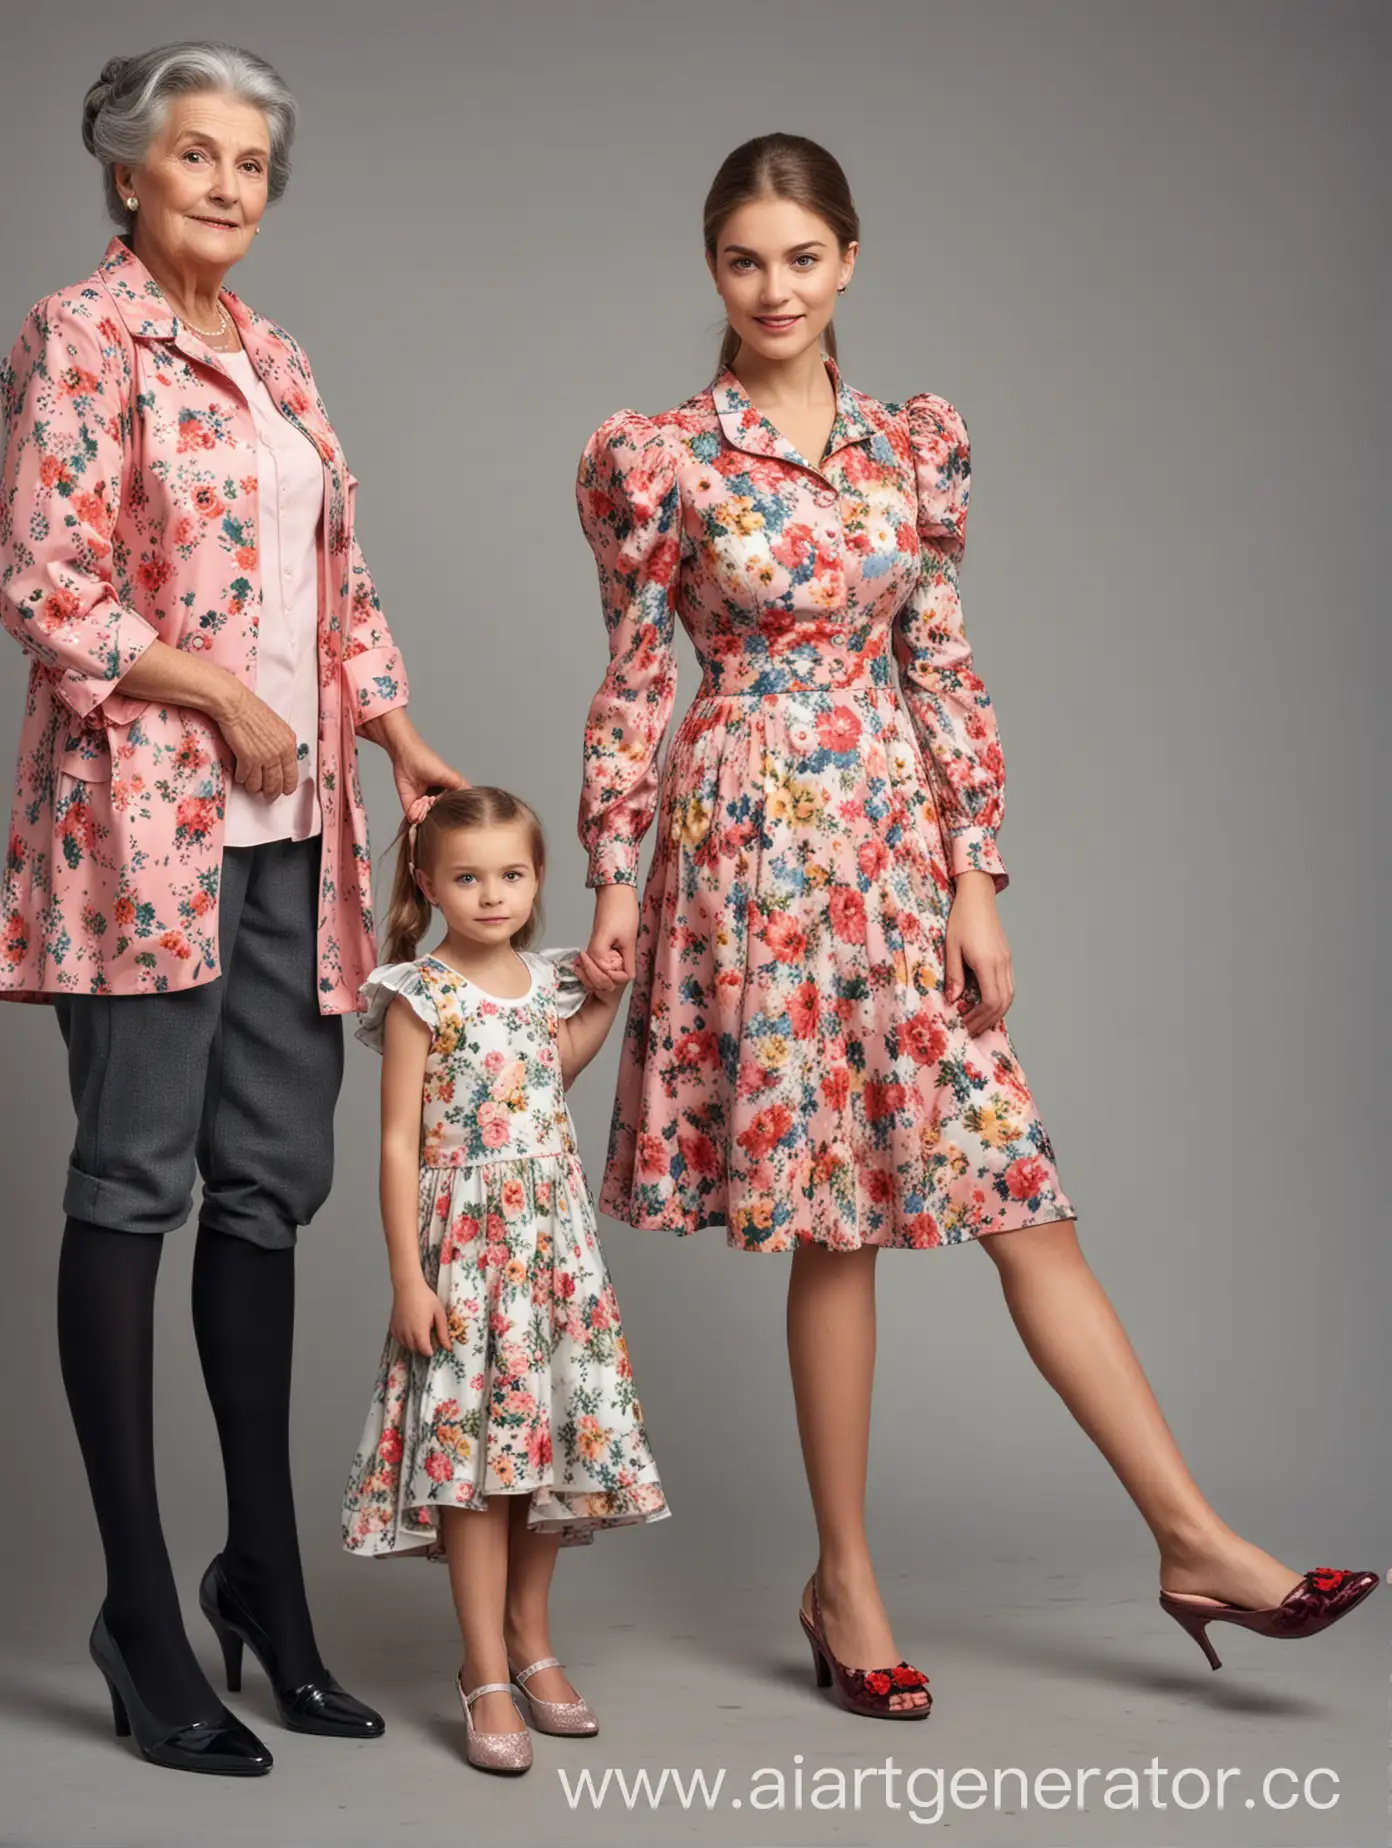 плакат. слева девочка в платье и гетрах в полный рост, посередине женщина на каблуках в деловой одежде в полный рост, справа бабушка в цветочном платье и тапочках в полный рост